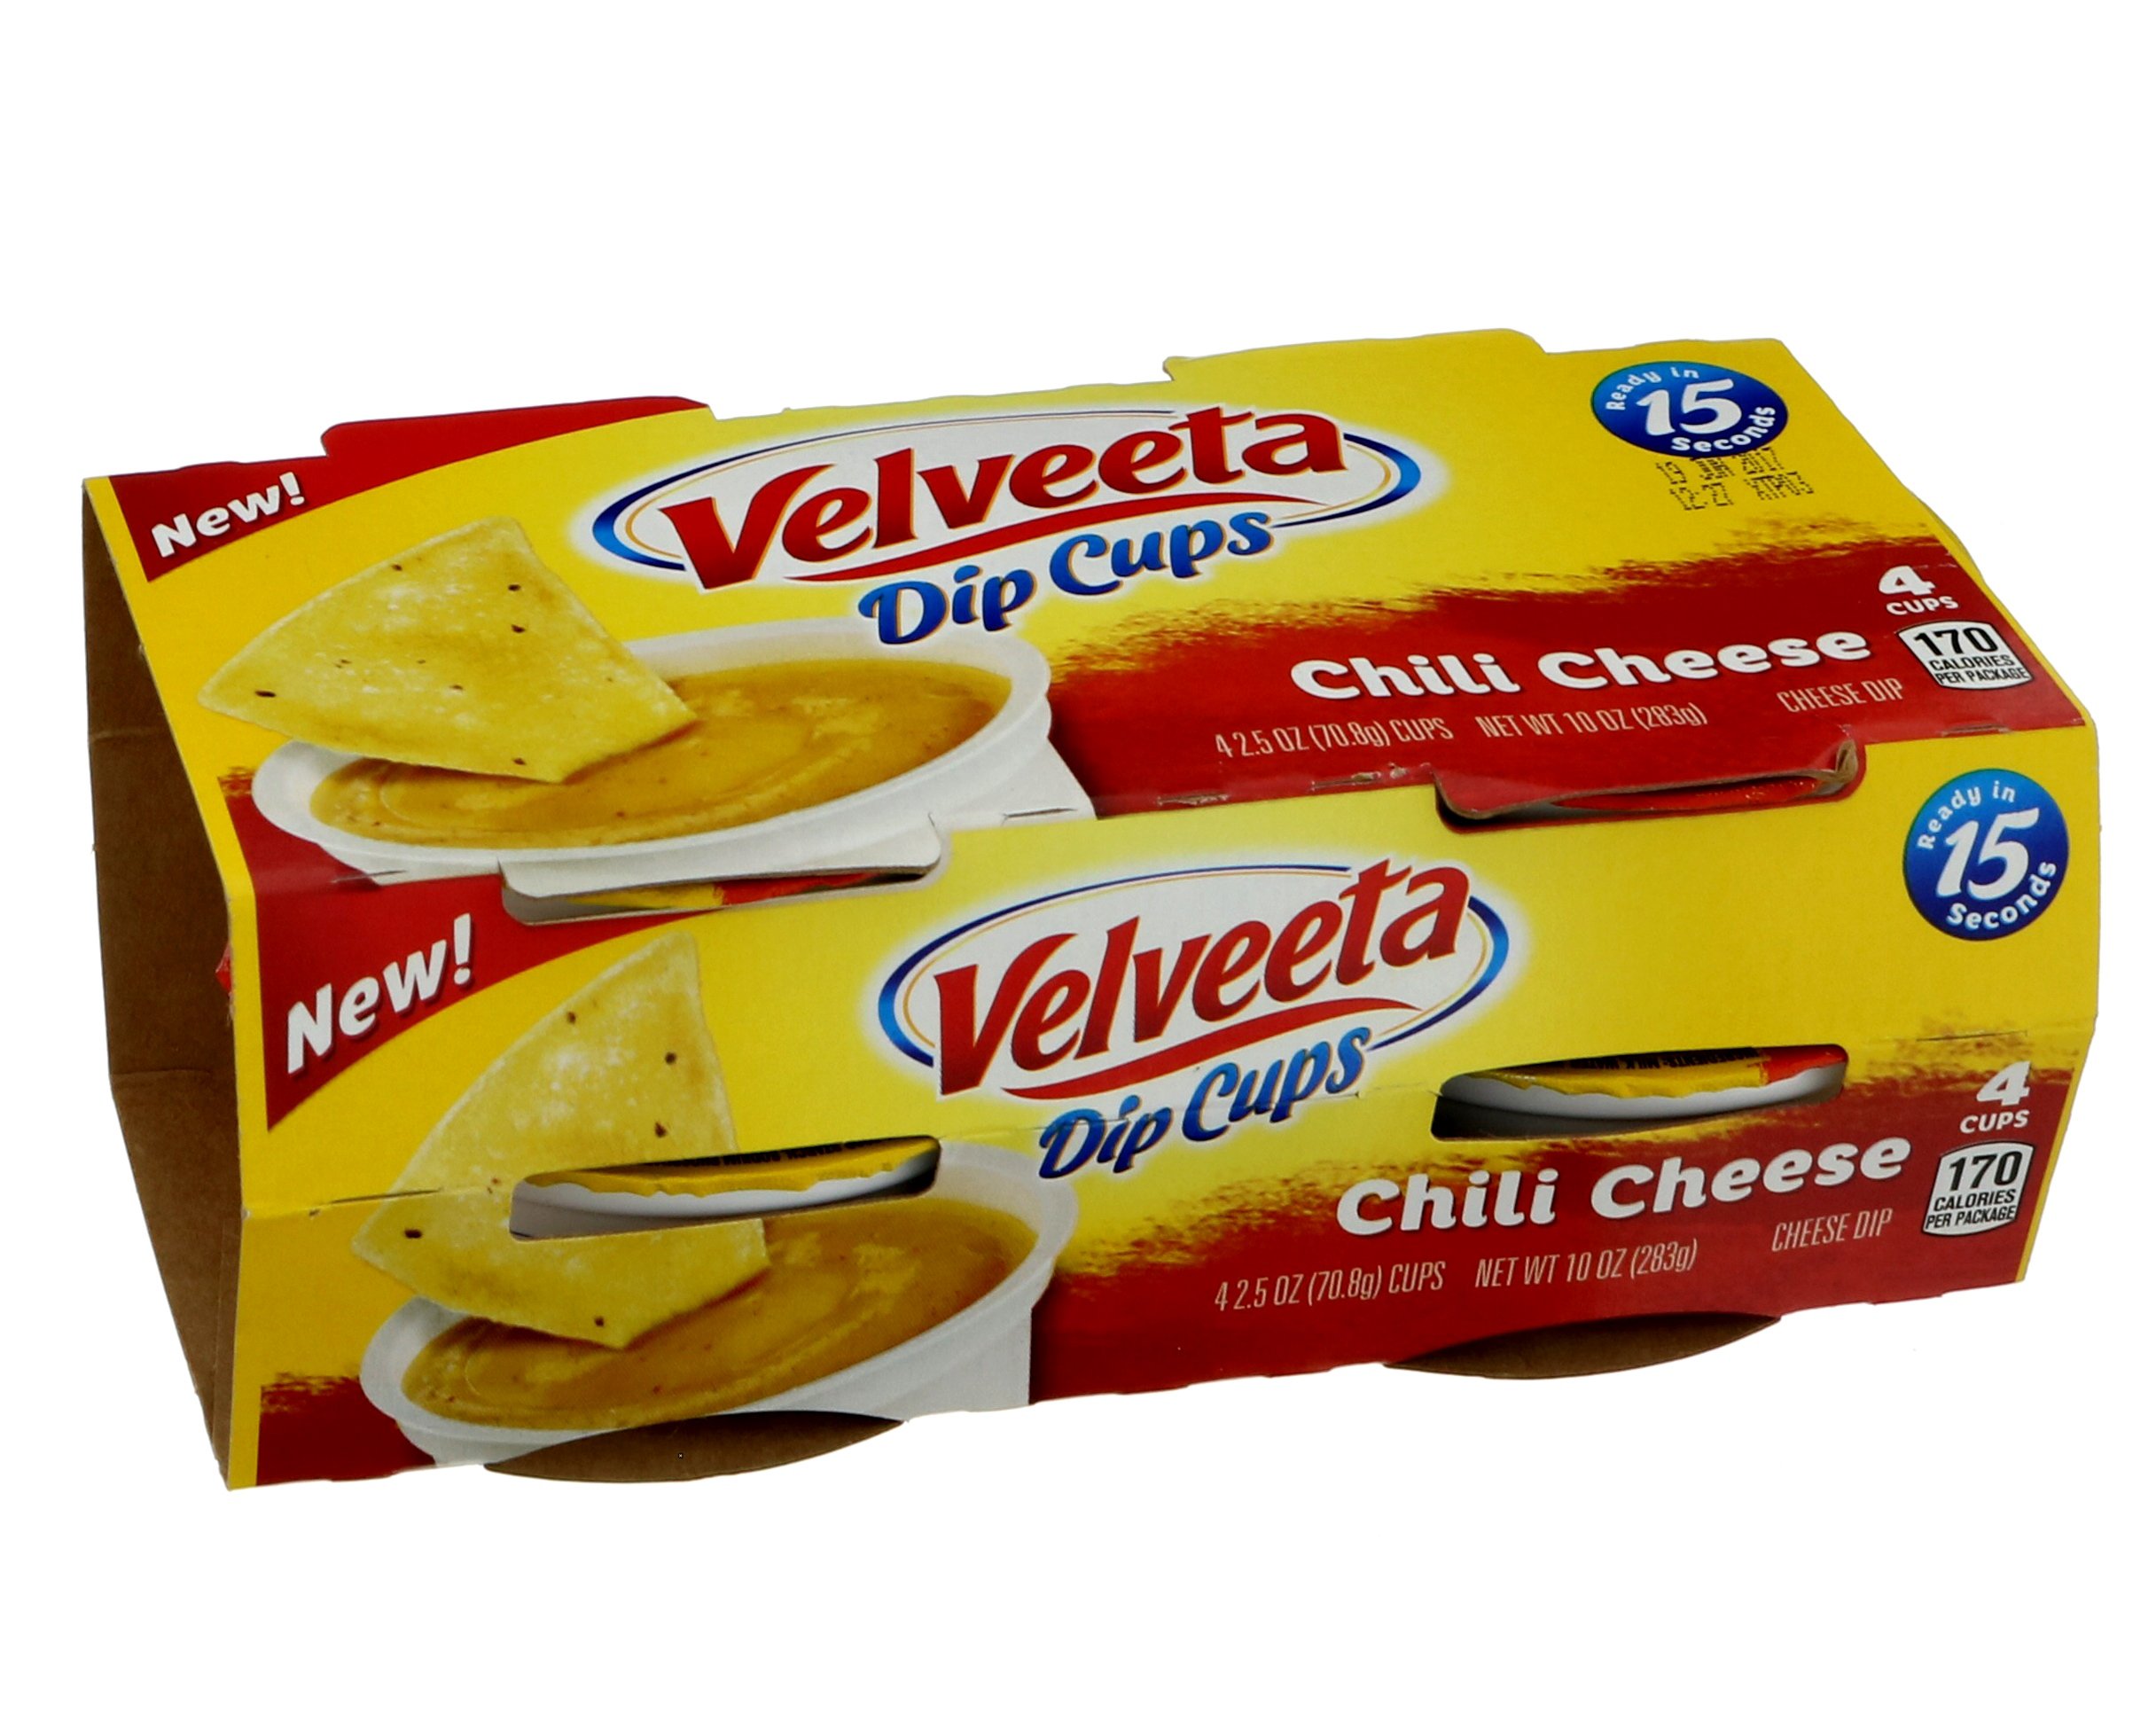 Kraft Velveeta Dip Cups Chili Cheese 4 ct - Shop Salsa & Dip at H-E-B